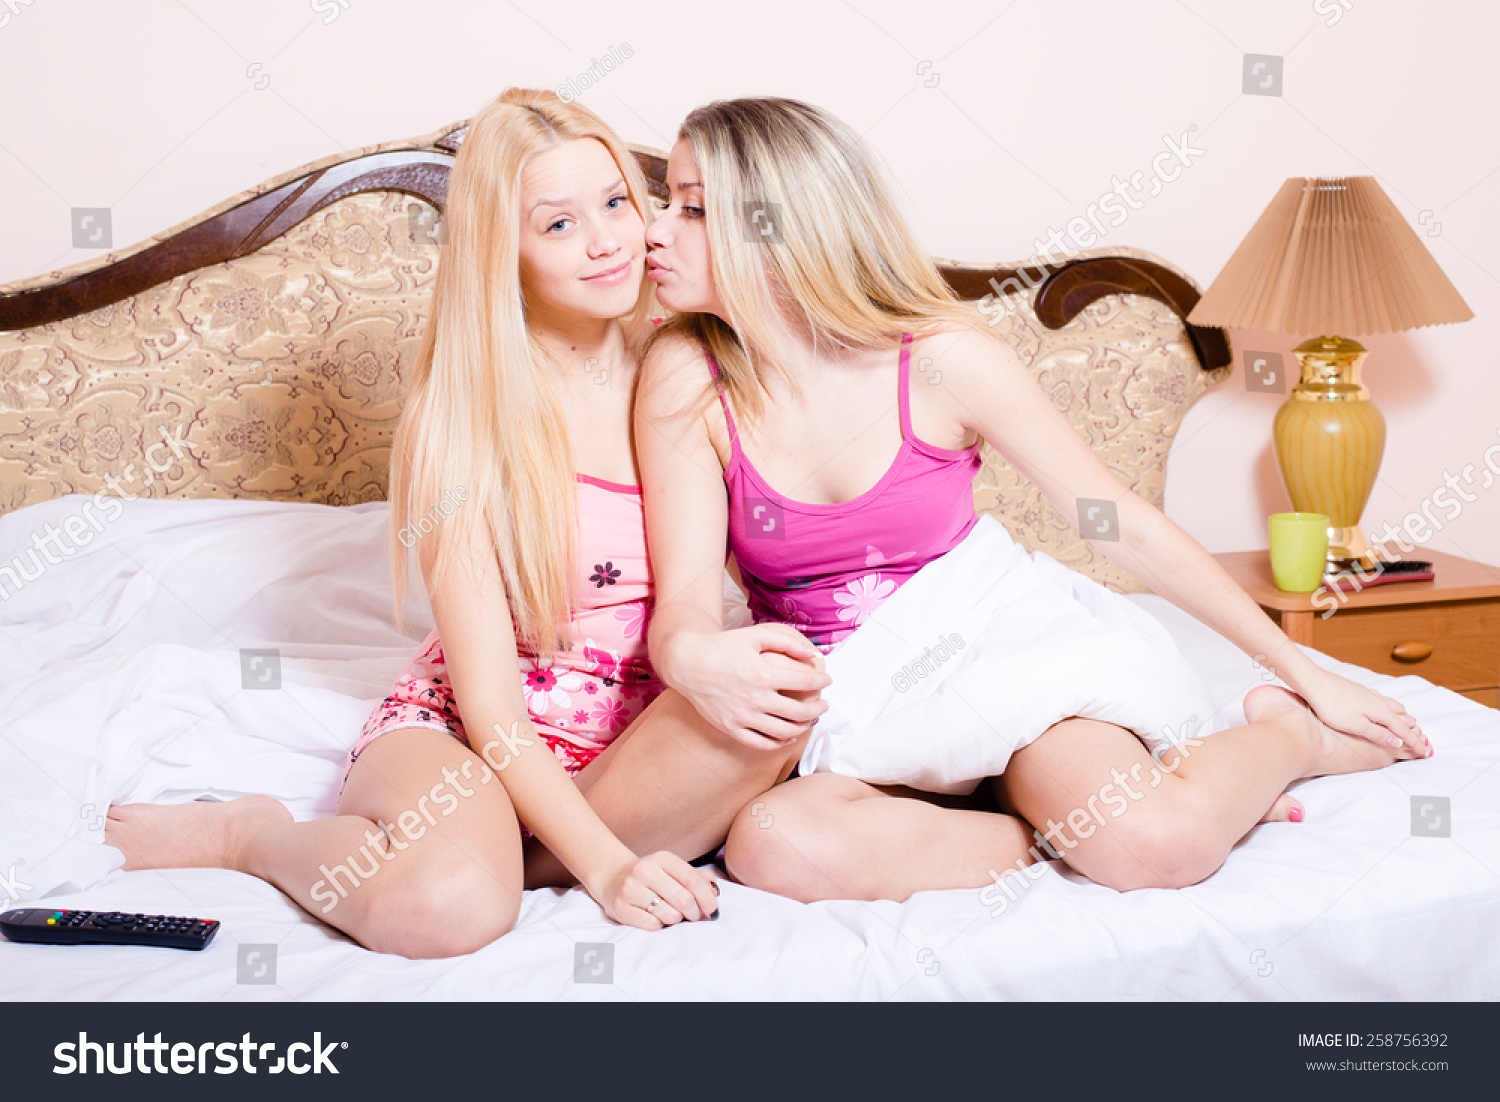 Мама полизала дочери. Две блондинки в постели. Юные подруги. Две сестрички в постели. Две сестренки на кровати.